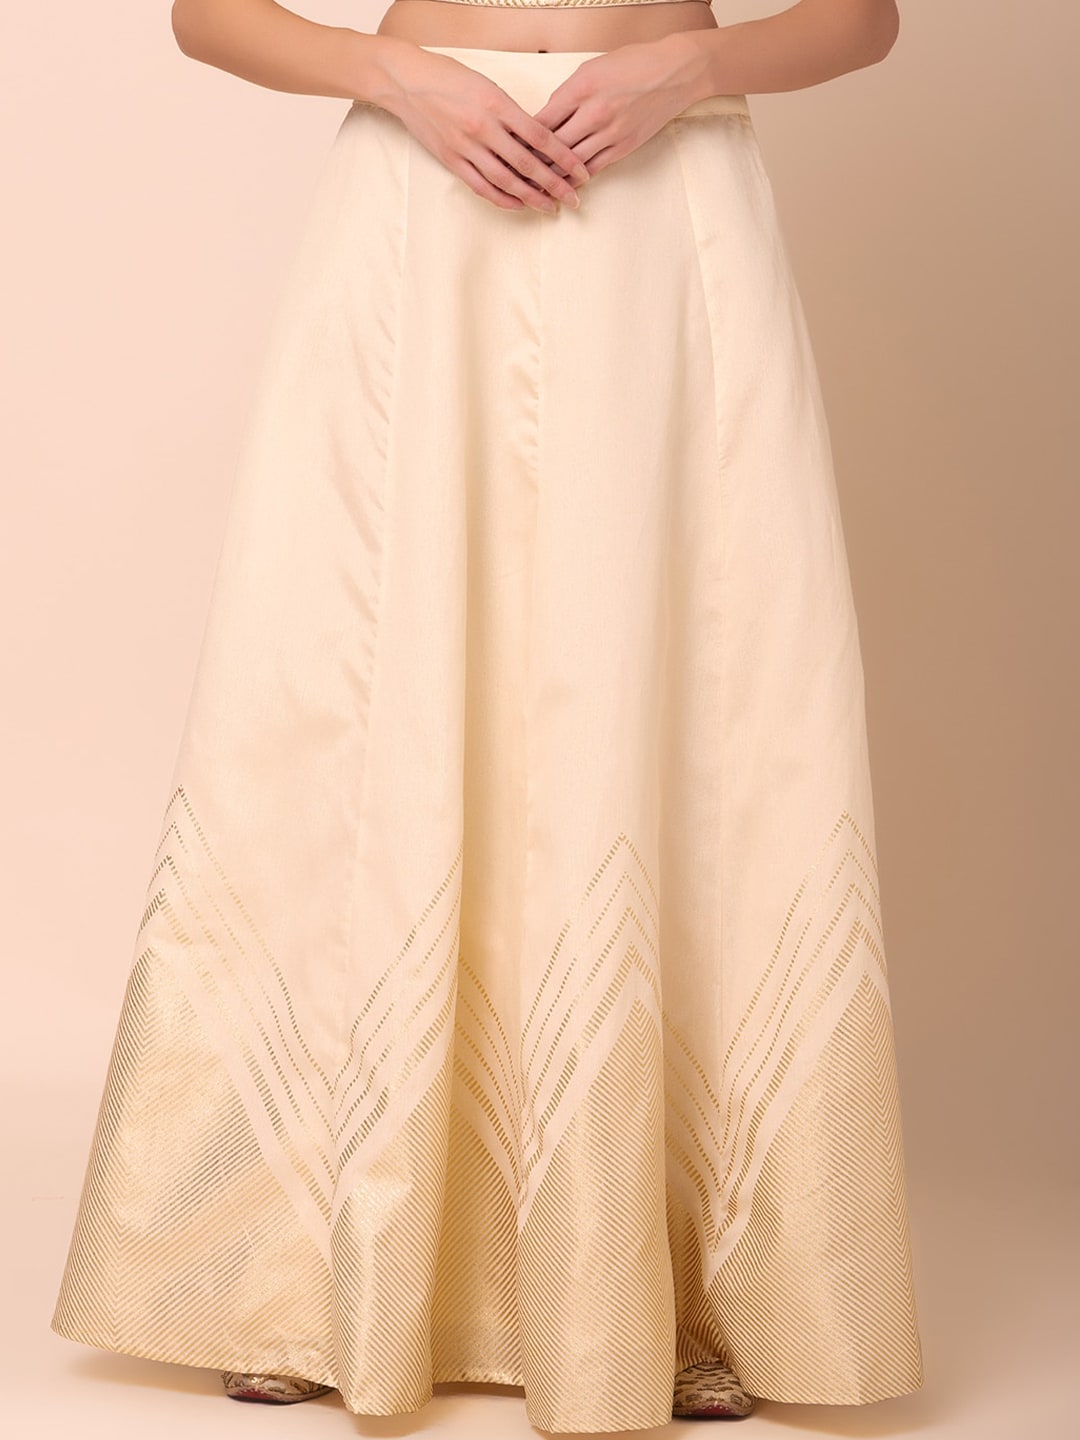 INDYA Foil Printed Lehenga Skirt Price in India